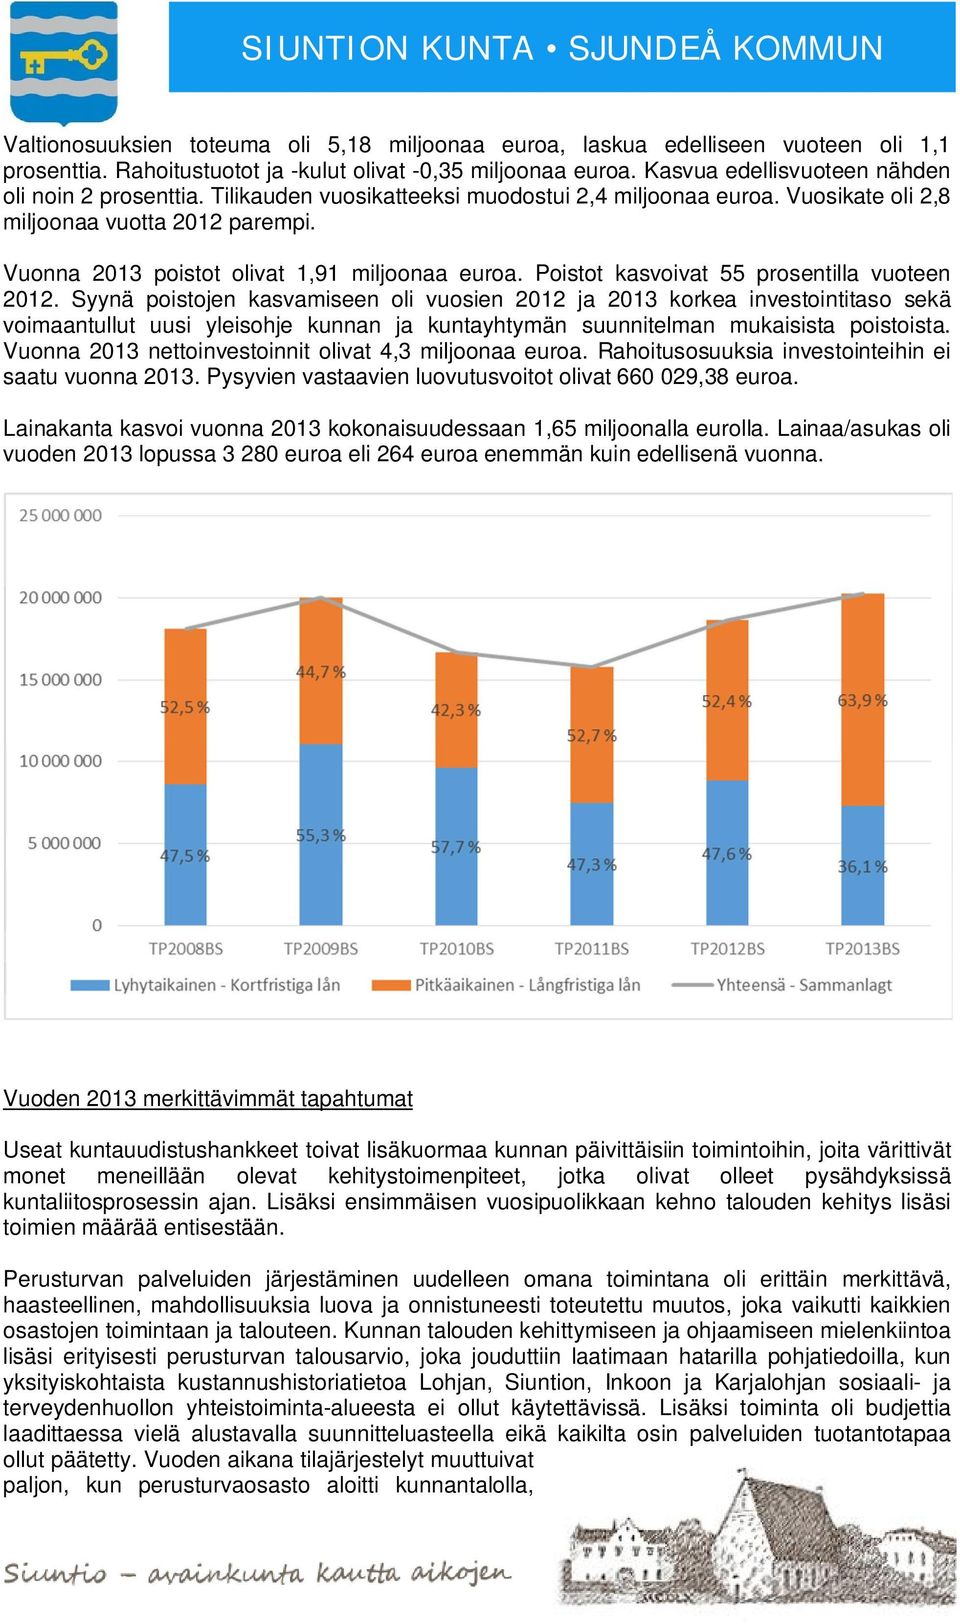 Vuonna 2013 poistot olivat 1,91 miljoonaa euroa. Poistot kasvoivat 55 prosentilla vuoteen 2012.